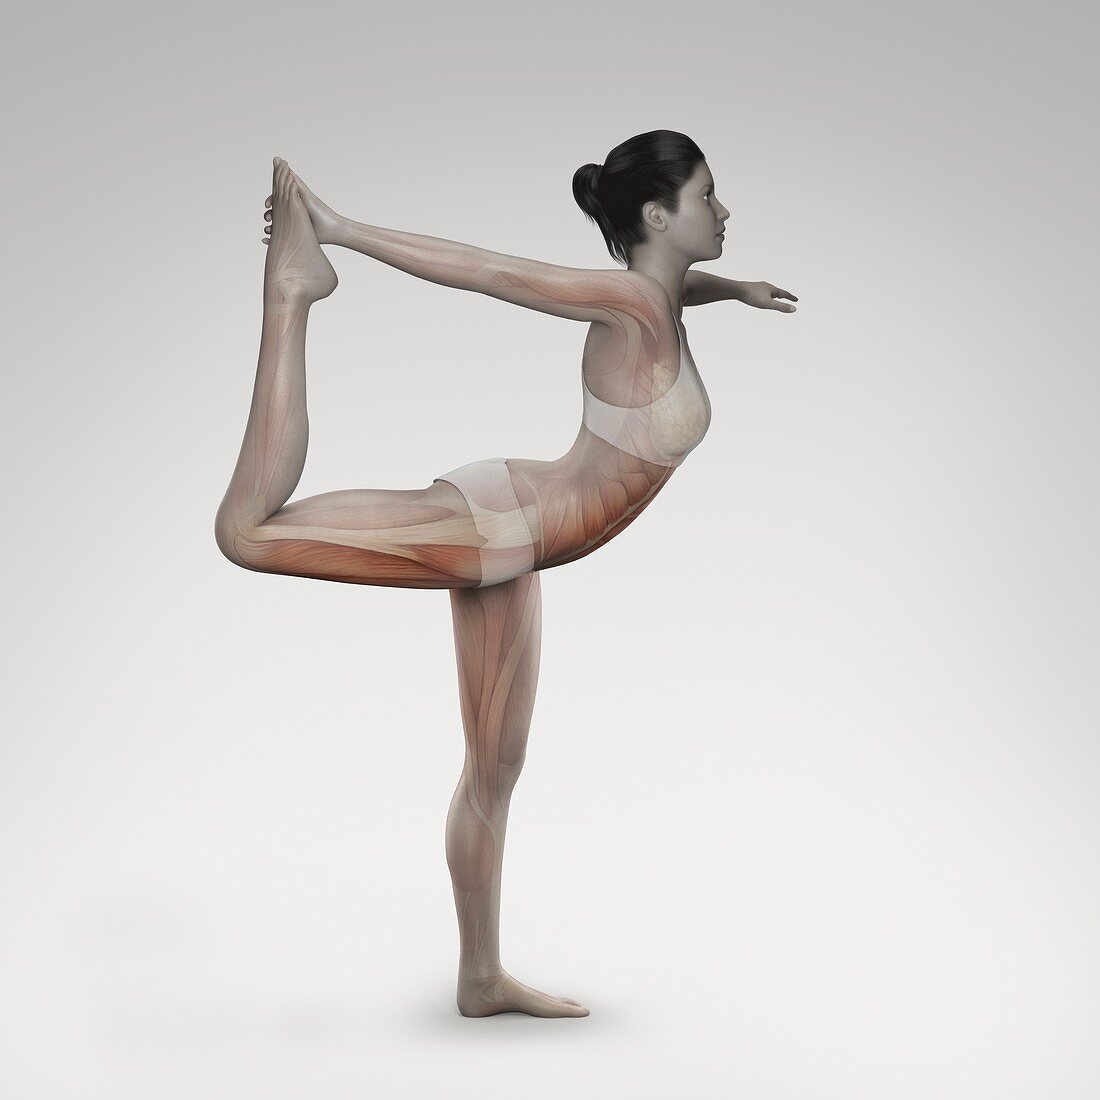 Yoga The Dancer's Pose, artwork